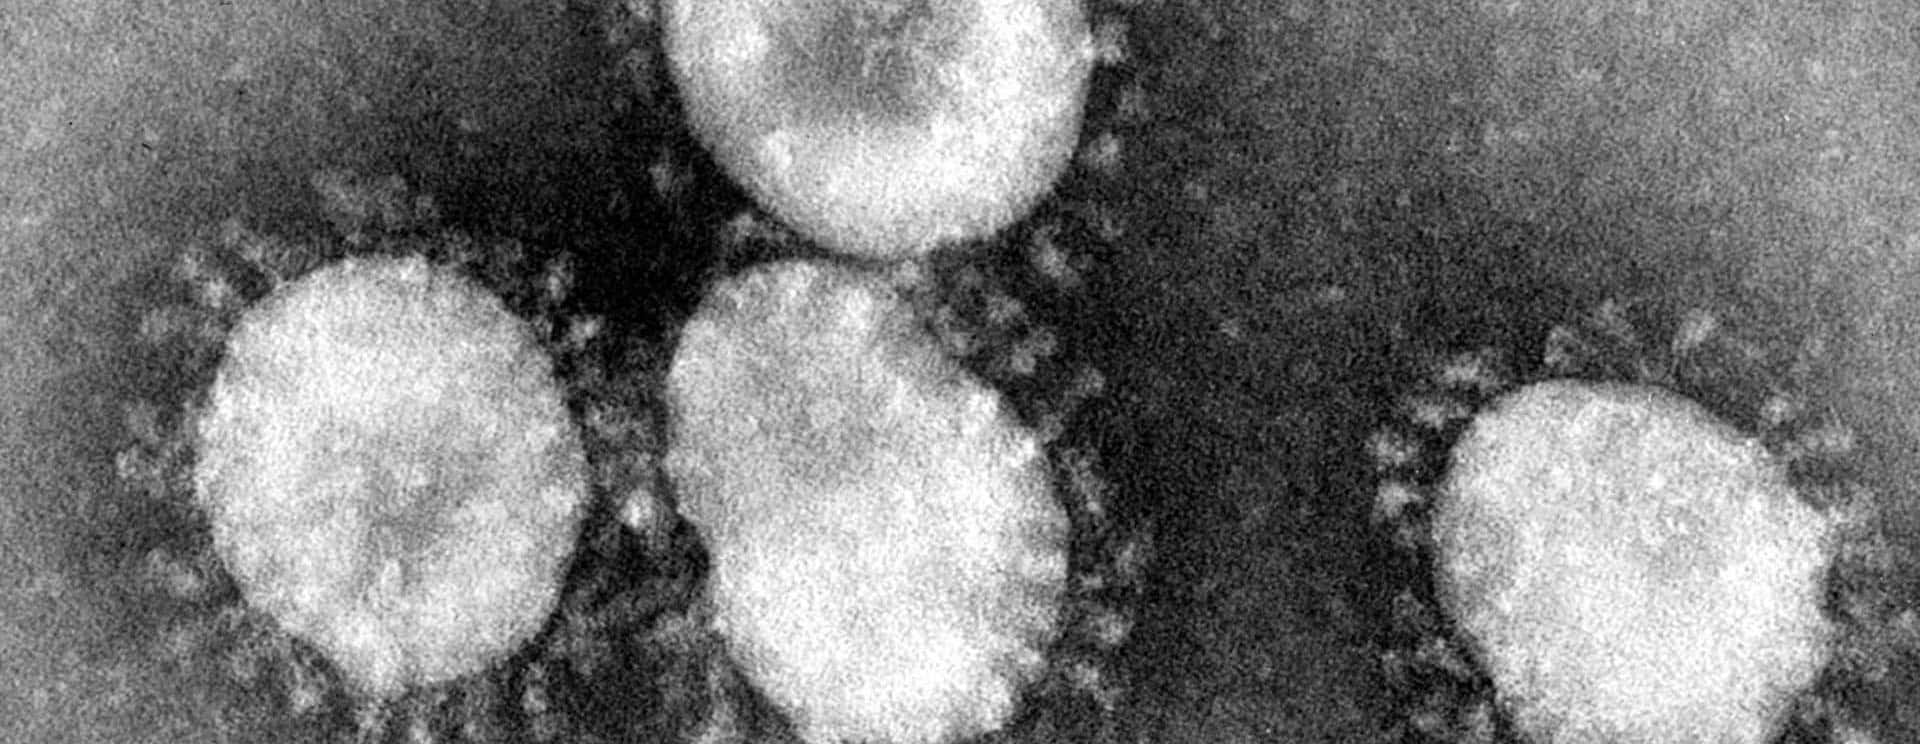 coronaviruses-jpg-40